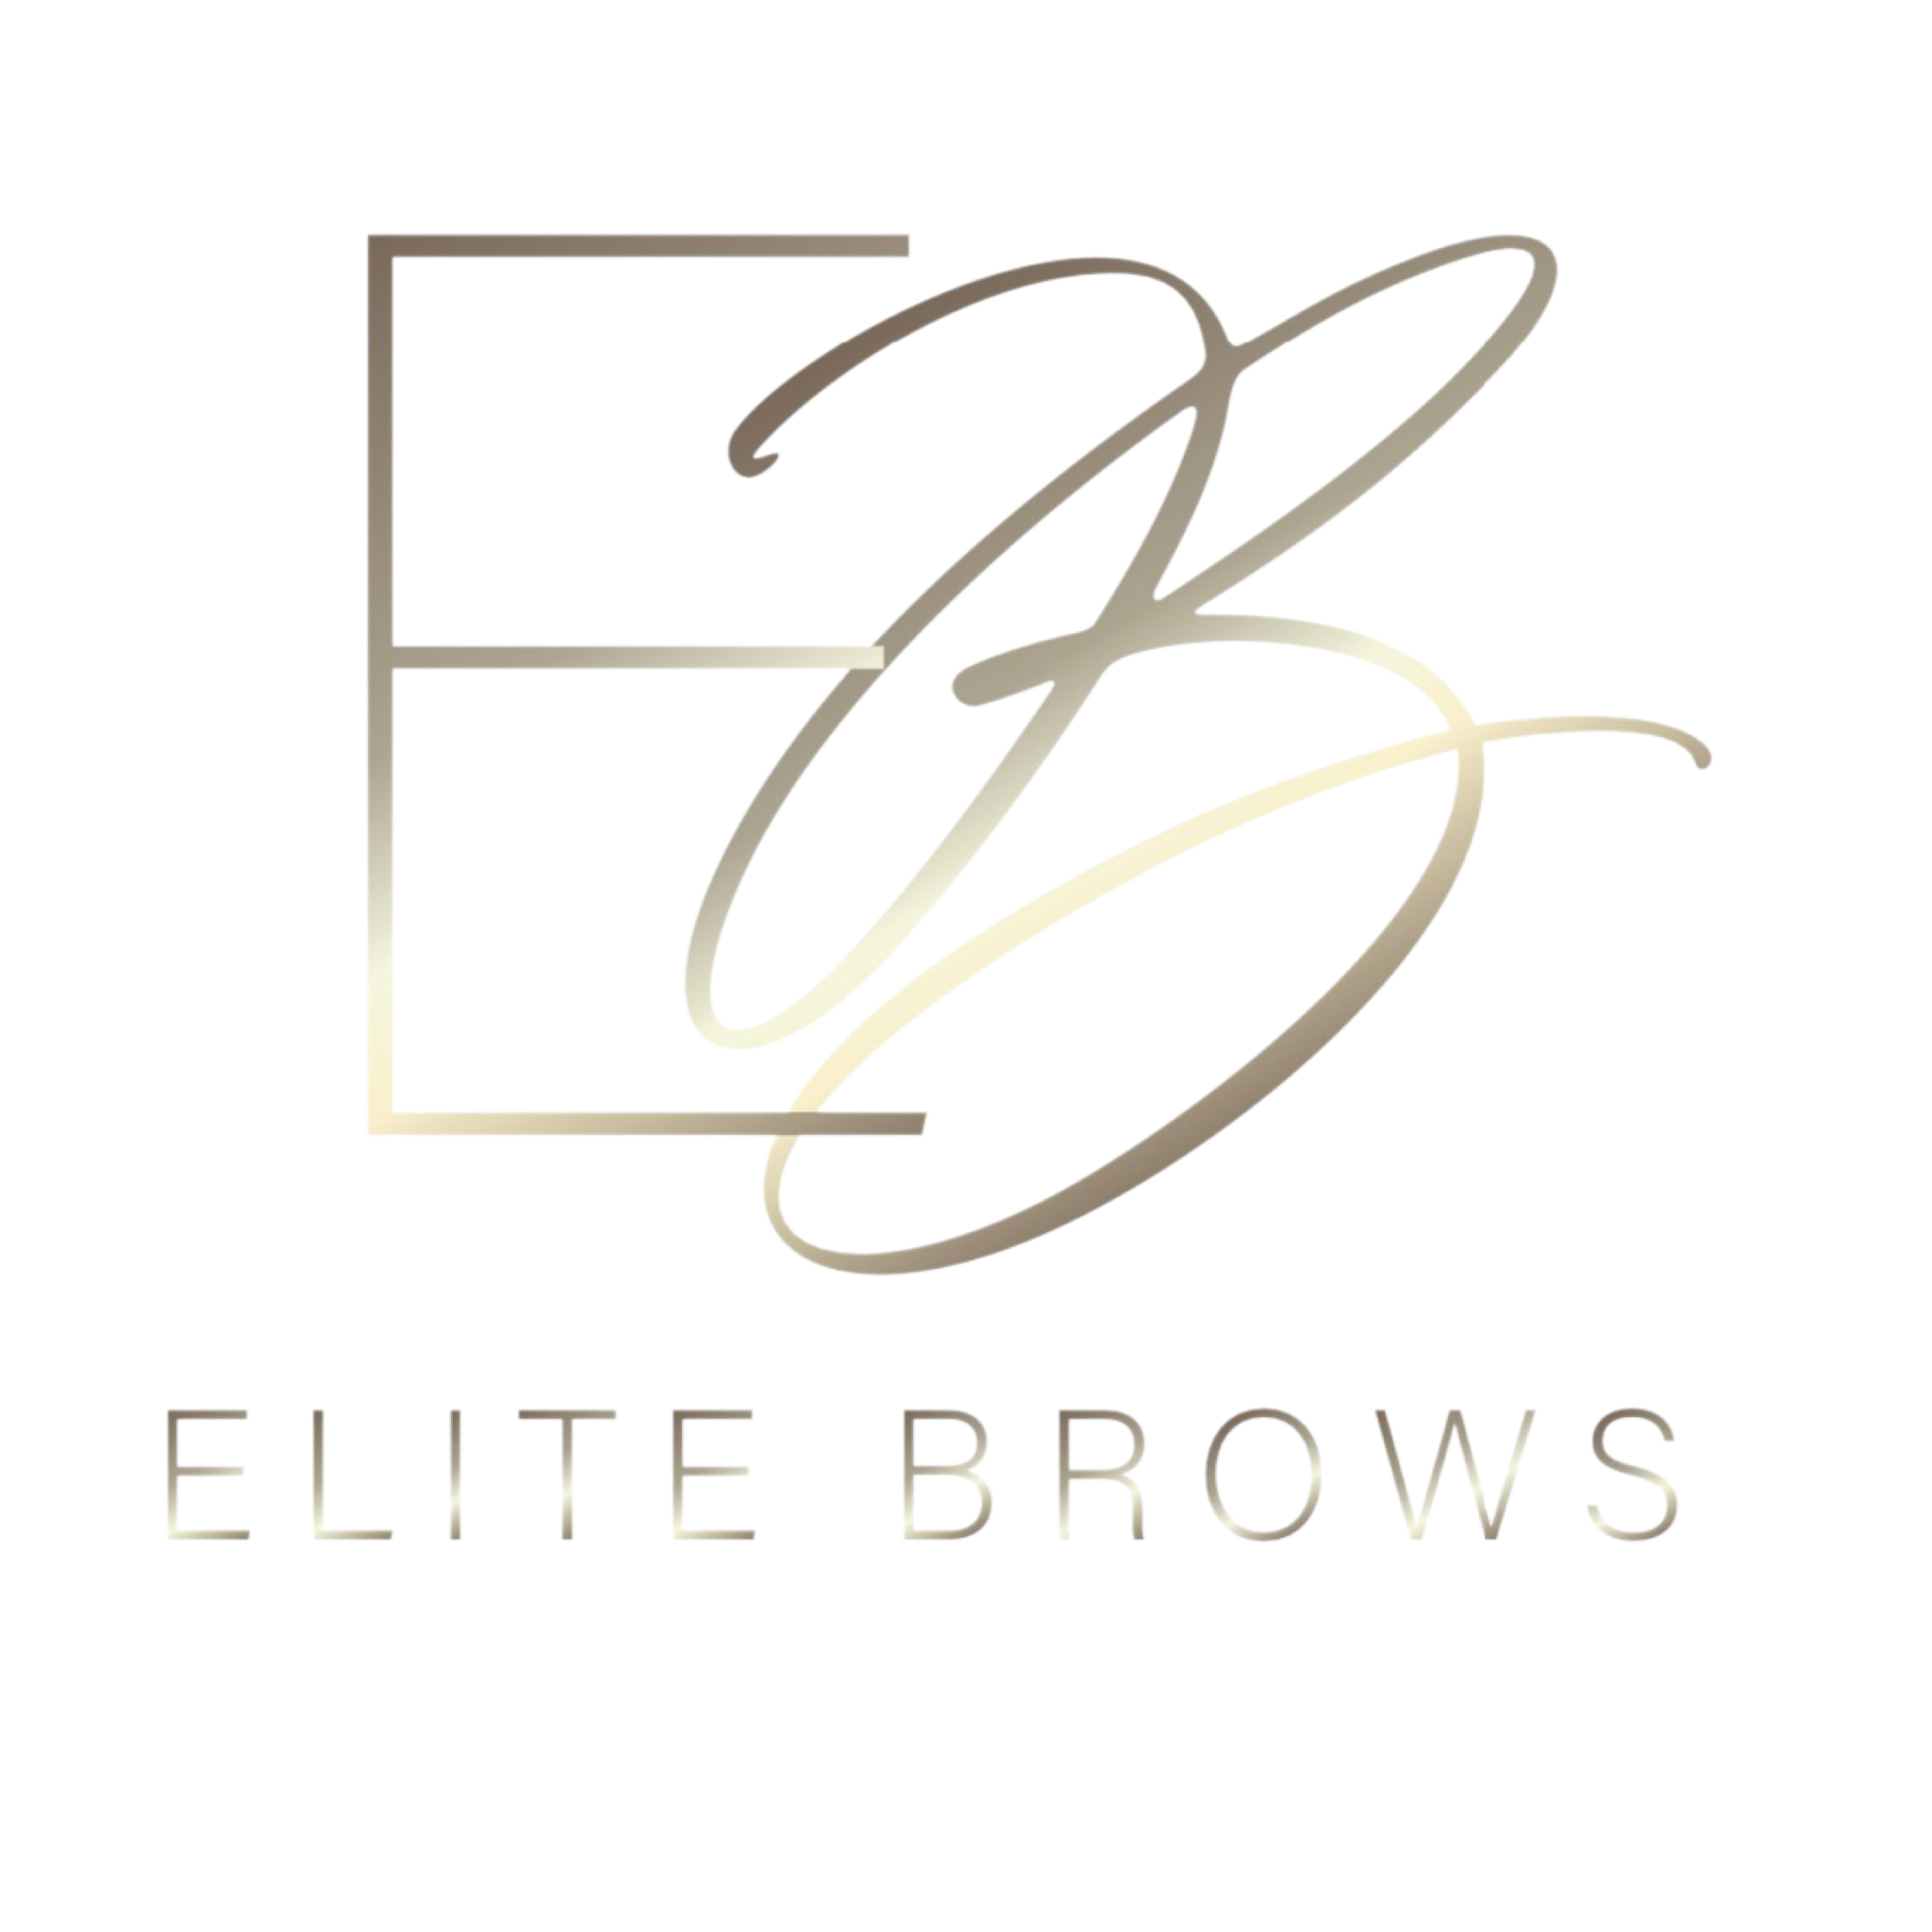 Elite Brows – Elite Brows Au